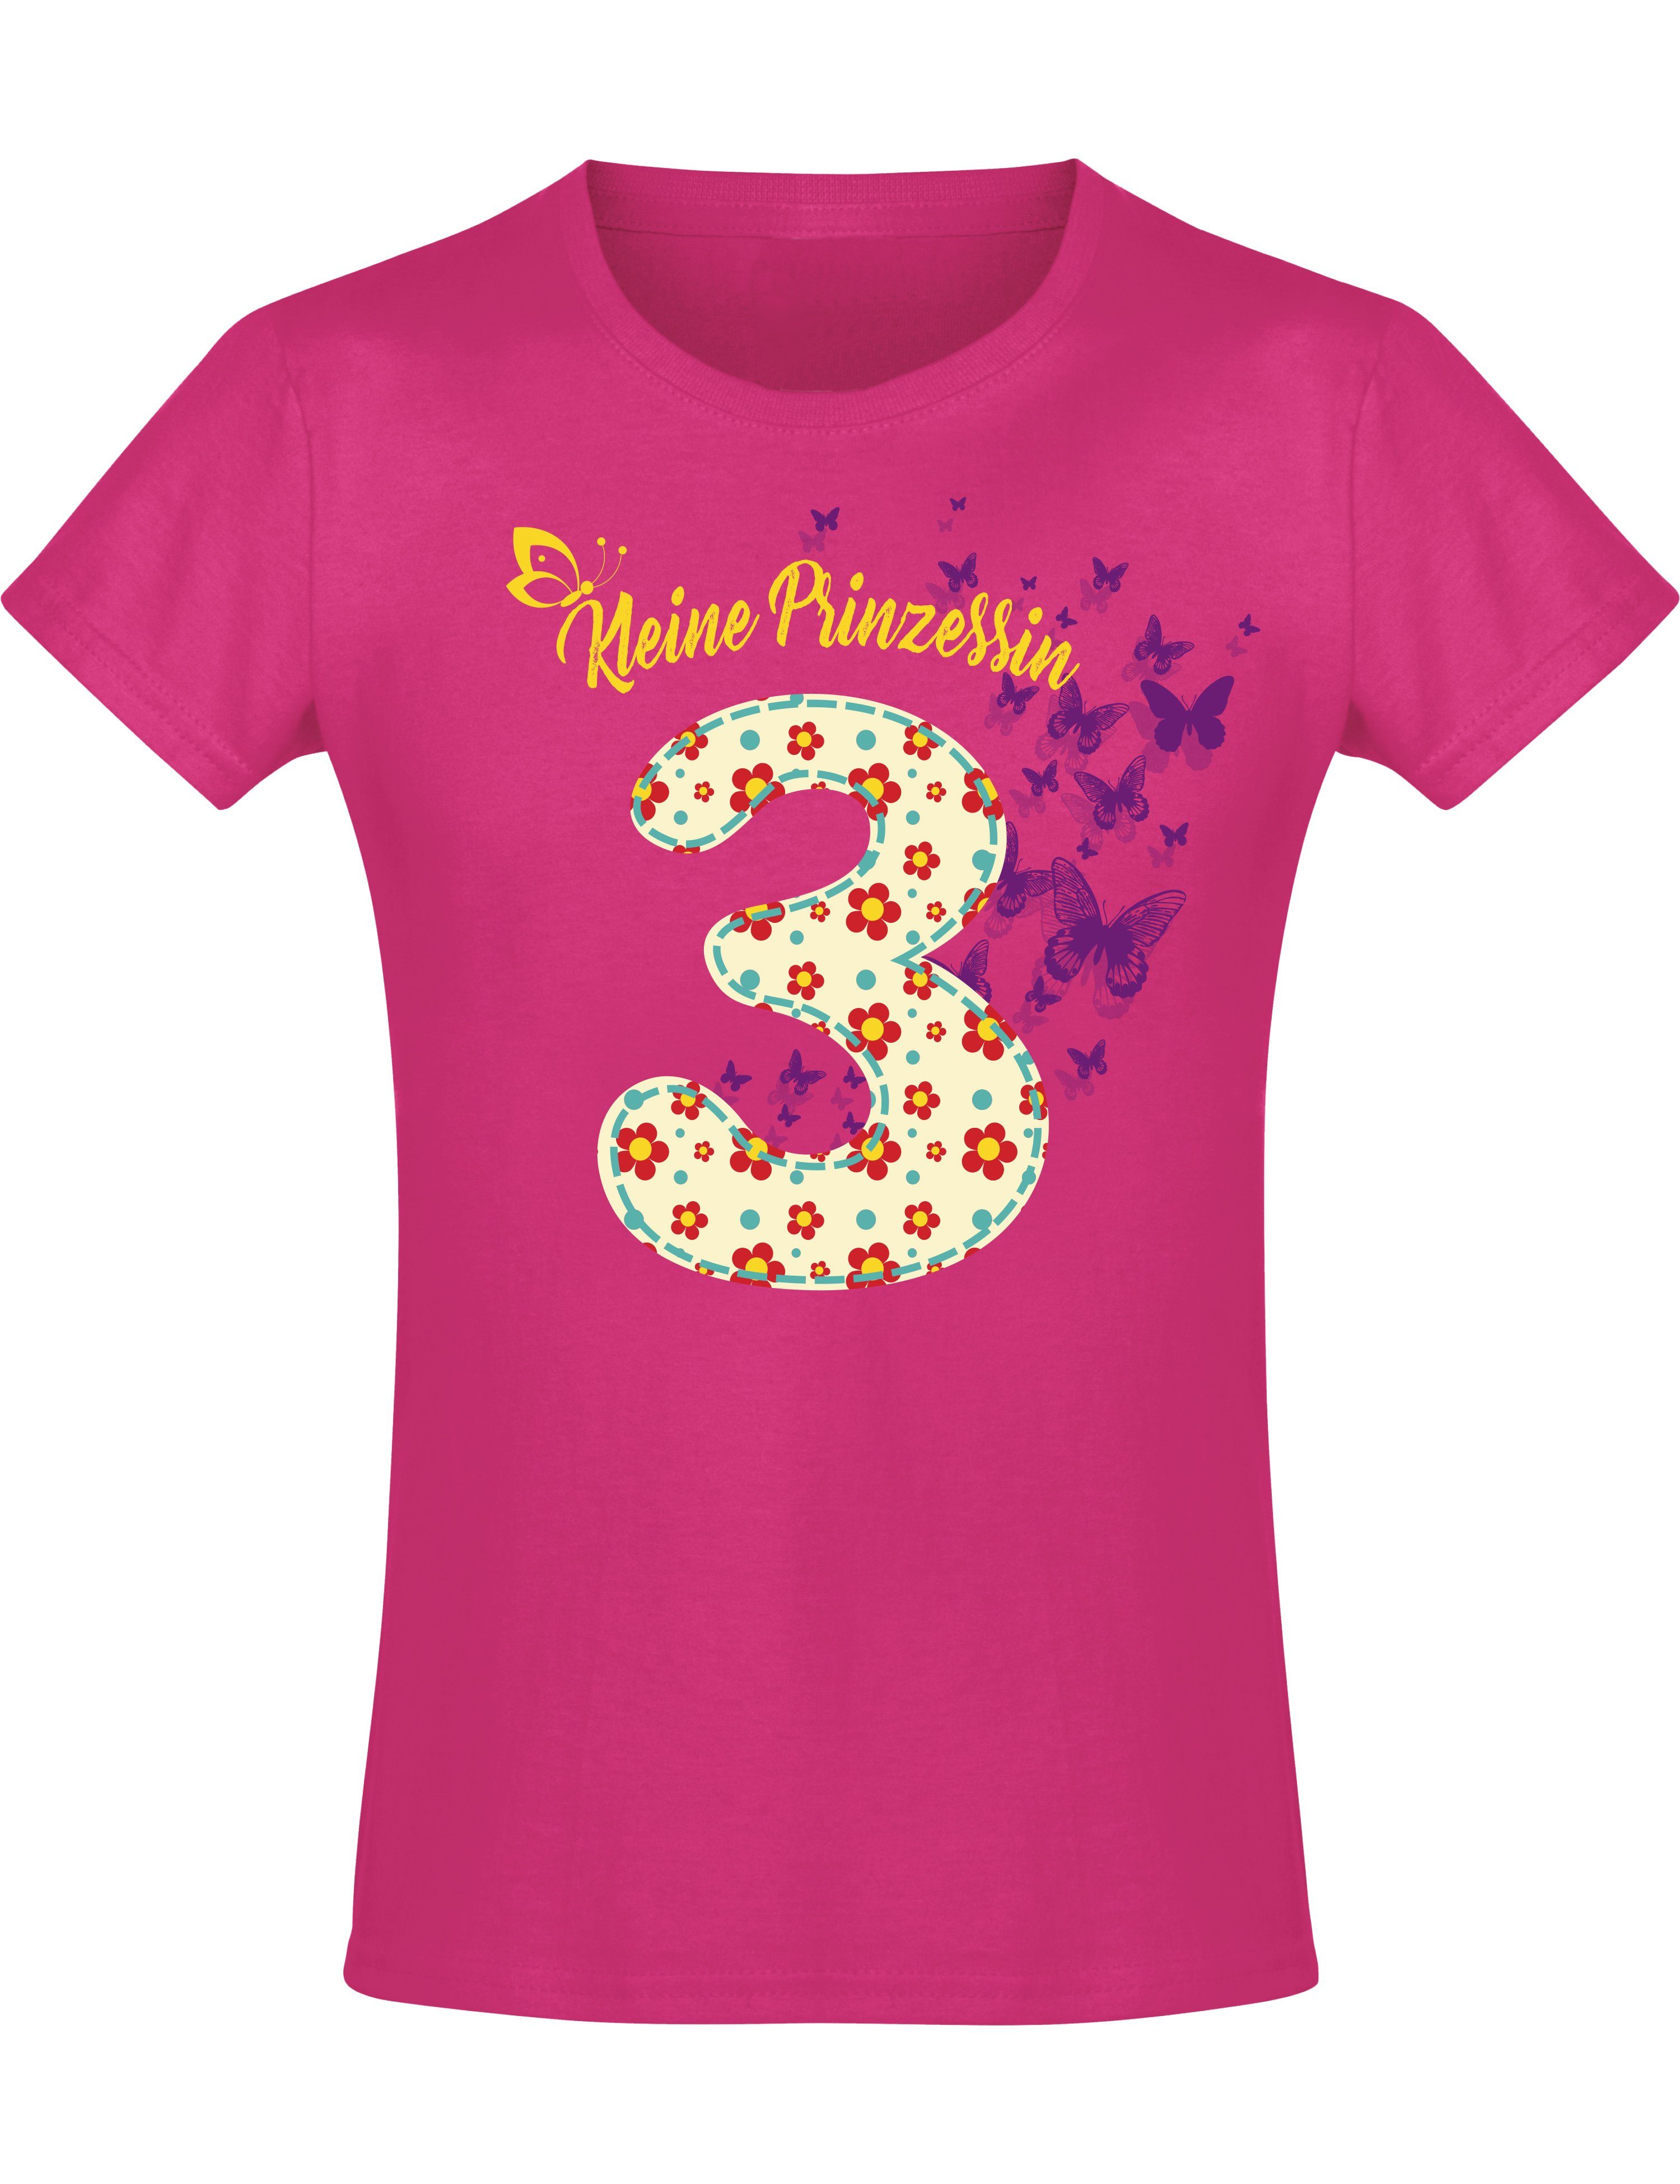 für Mädchen Jahre hochwertiger mit : aus Print-Shirt Blumen, Siebdruck, Baumwolle 3 Baddery Geburstagsgeschenk